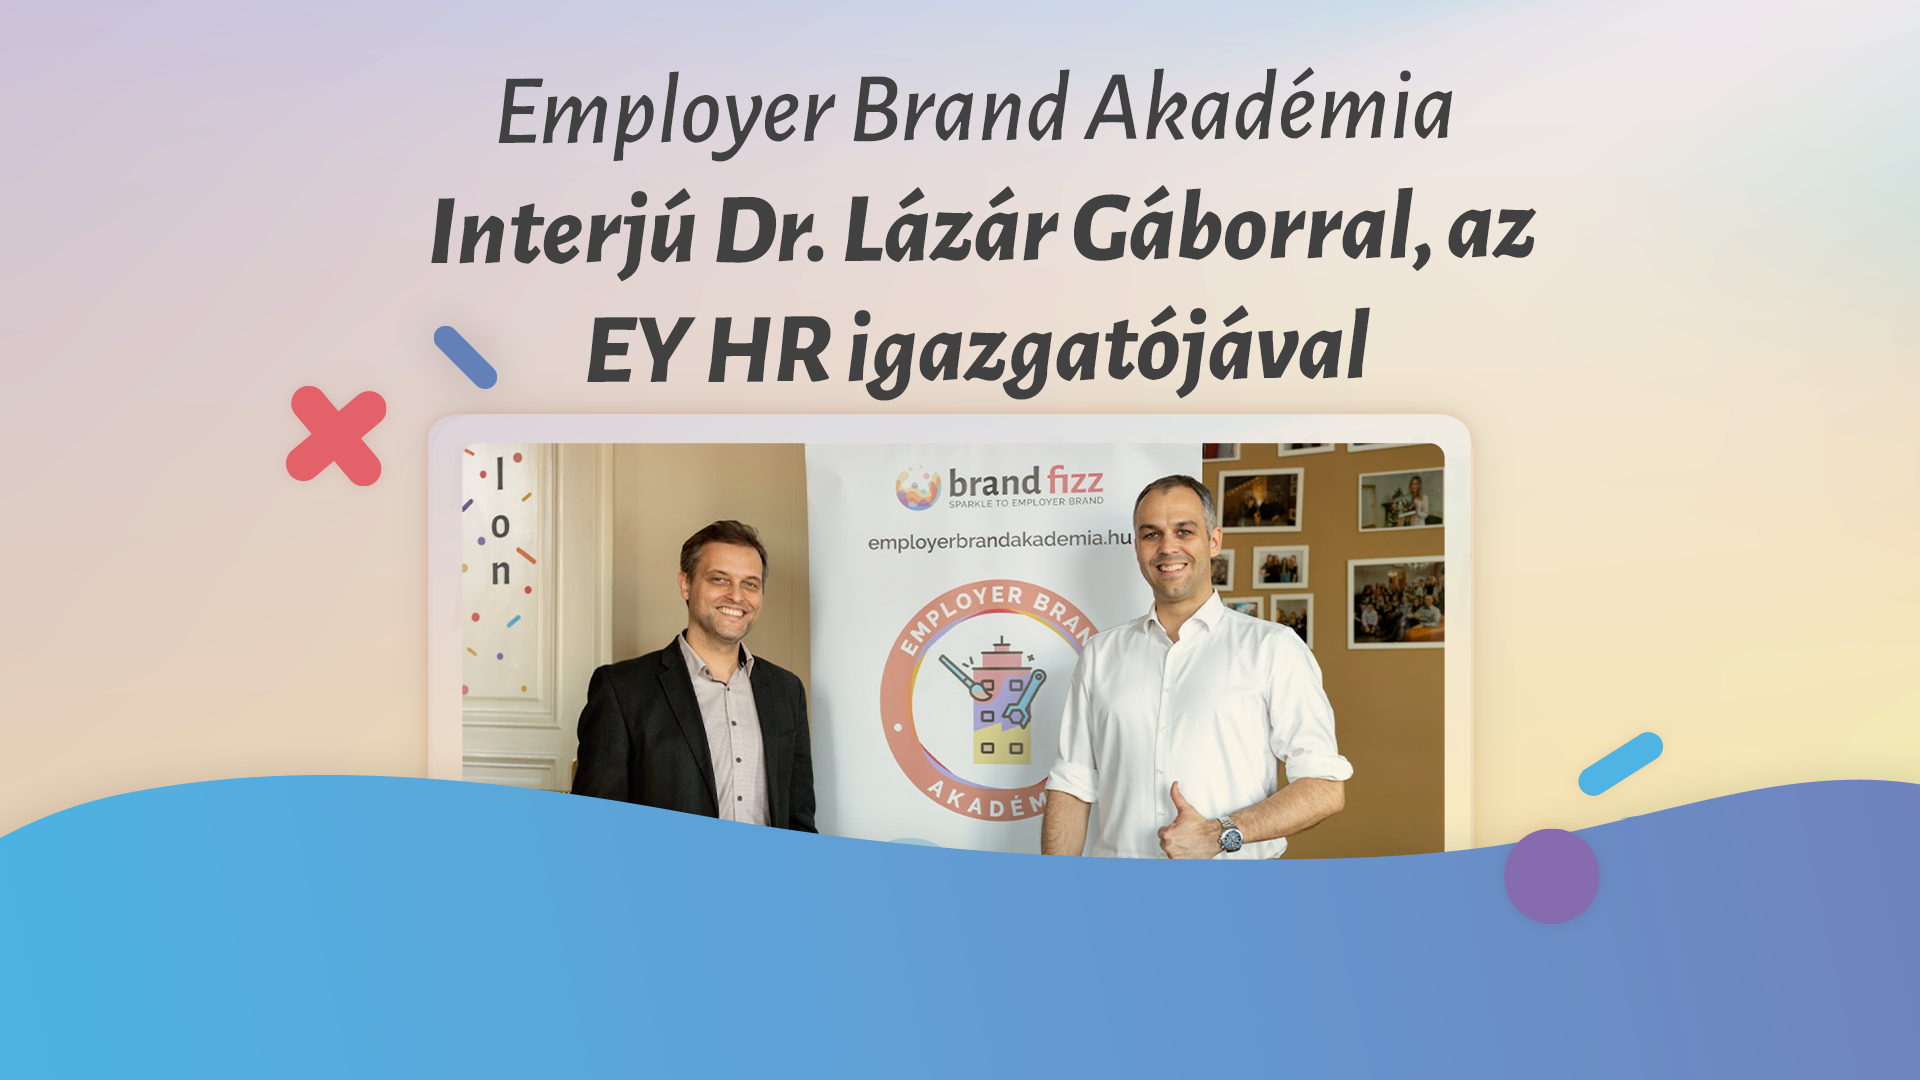 Interjú Dr. Lázár Gáborral, az EY HR igazgatójával